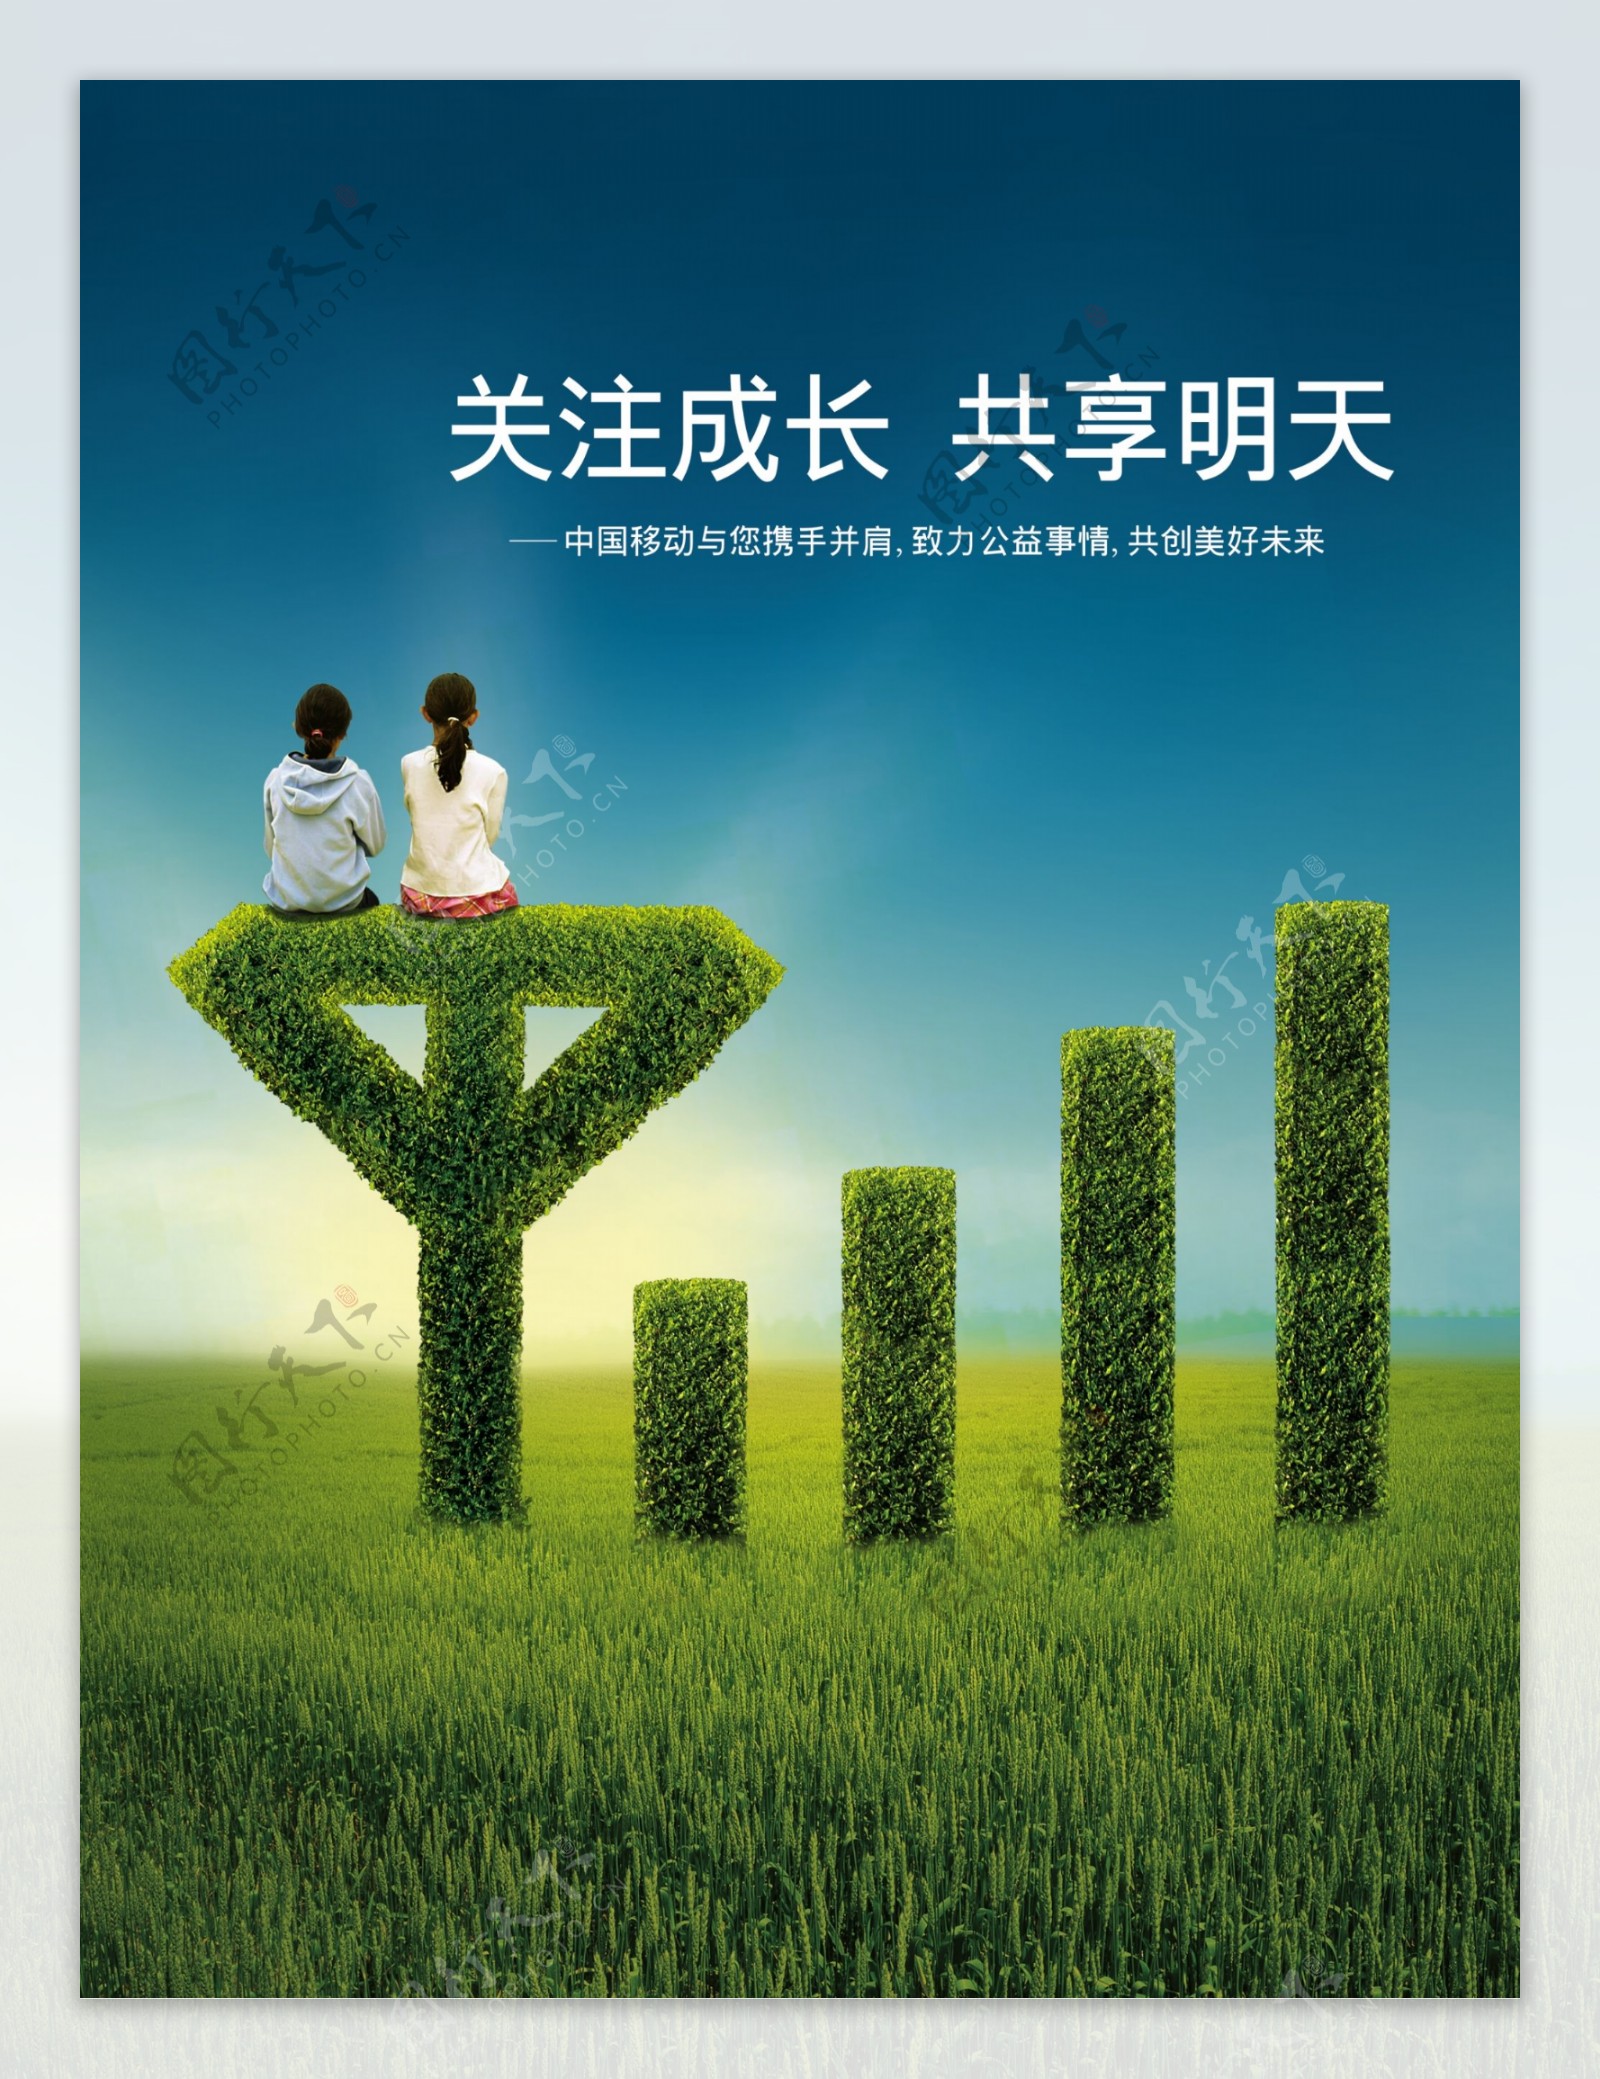 中国移动公益广告关注成长共享明天psd分层源文件336M下载